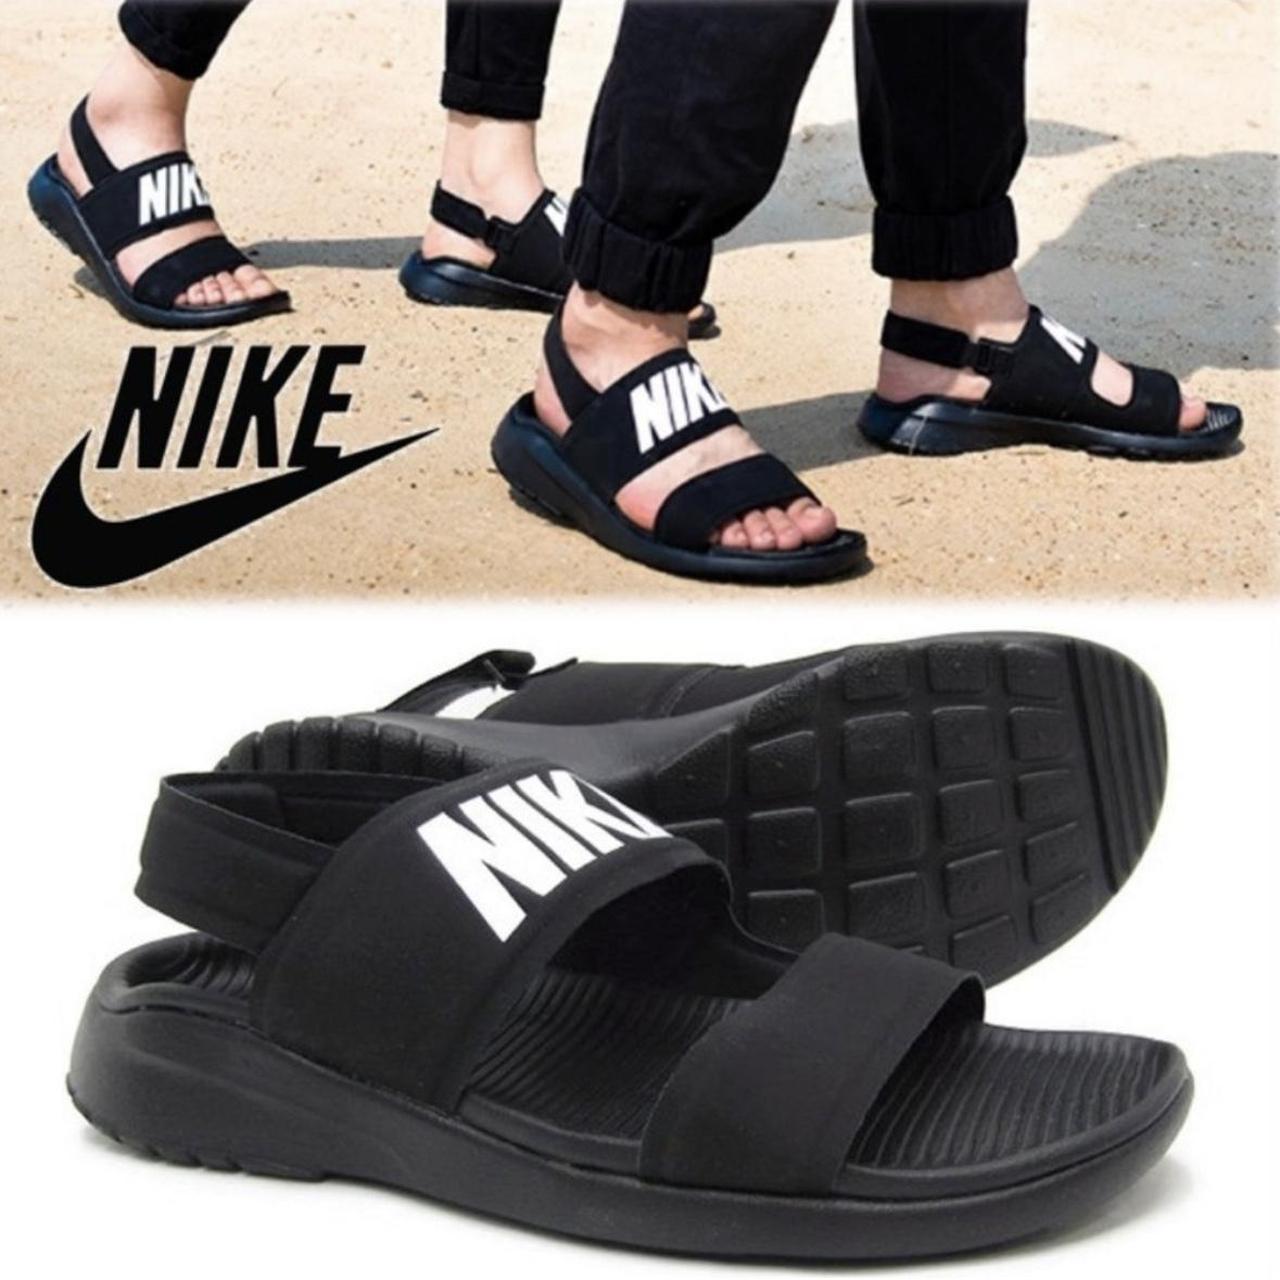 NIKE Comfort Sandals TANJUN Black & White Comfort Slingbacks Shoe Sz 8  ❤️sj17j19 | eBay